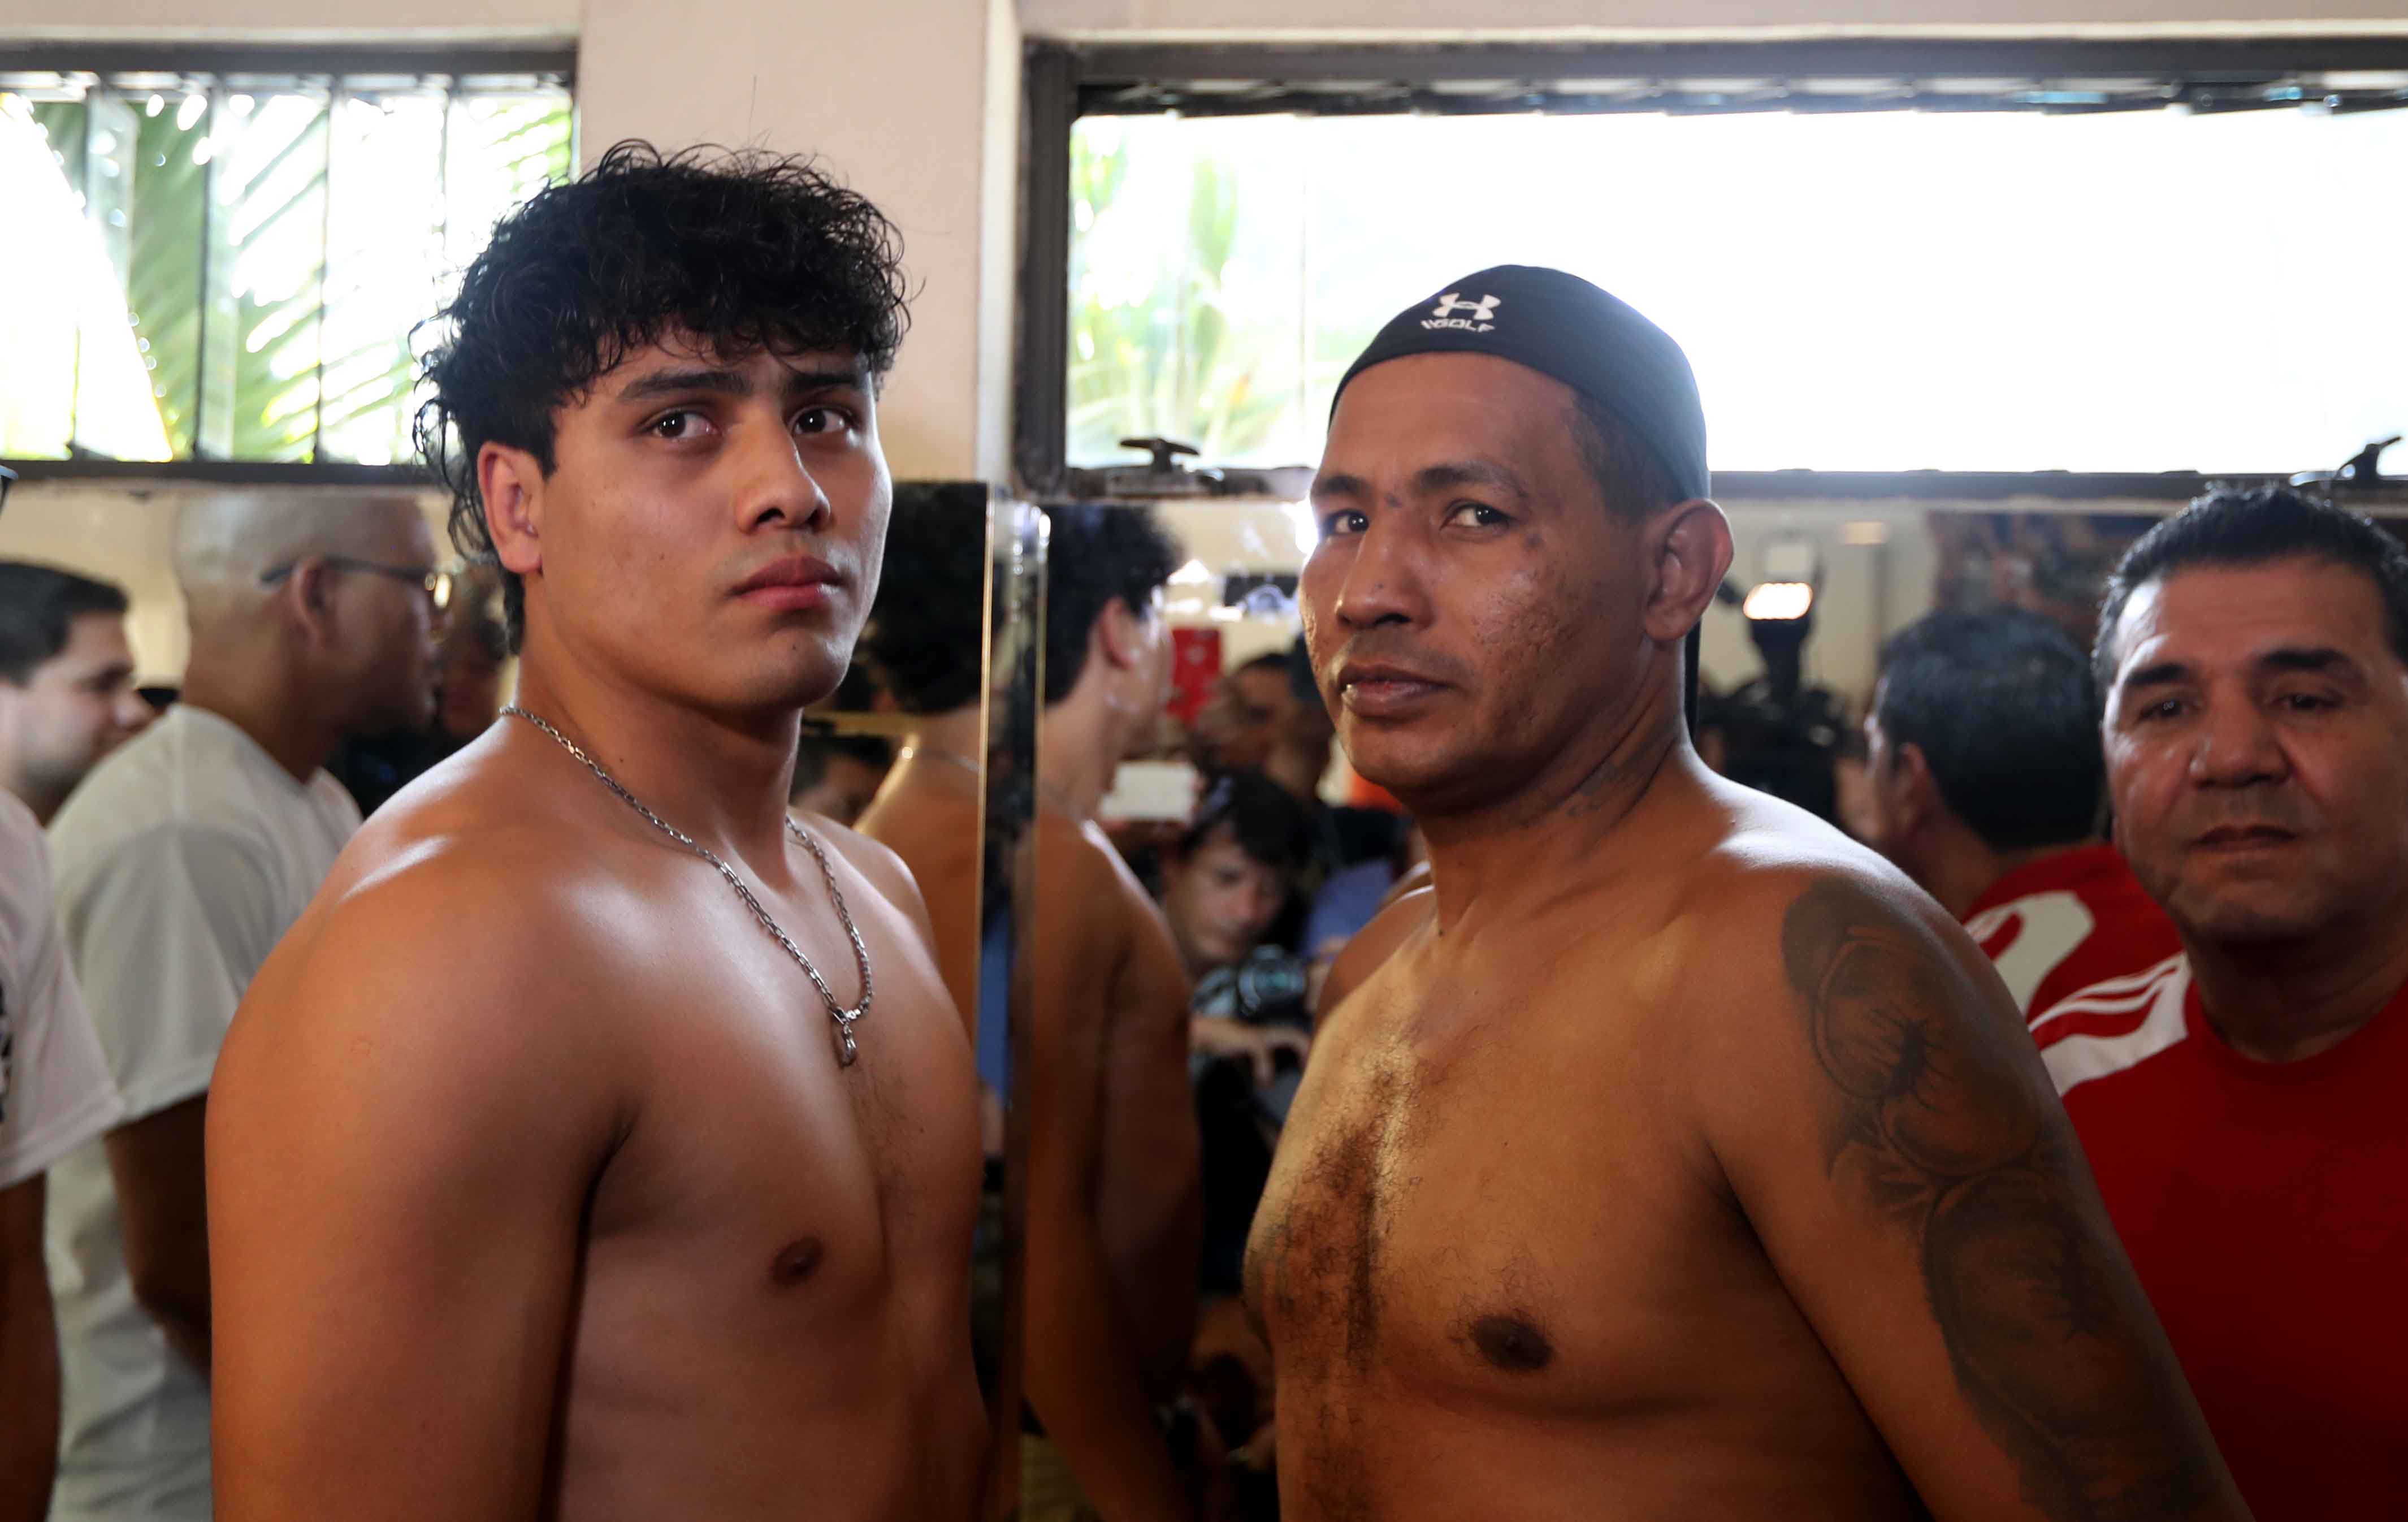 Léster Martínez y Ricardo Mayorga sostendrán hoy una pelea en Futeca Cayalá. (Foto Prensa Libre Carlos Vicente)